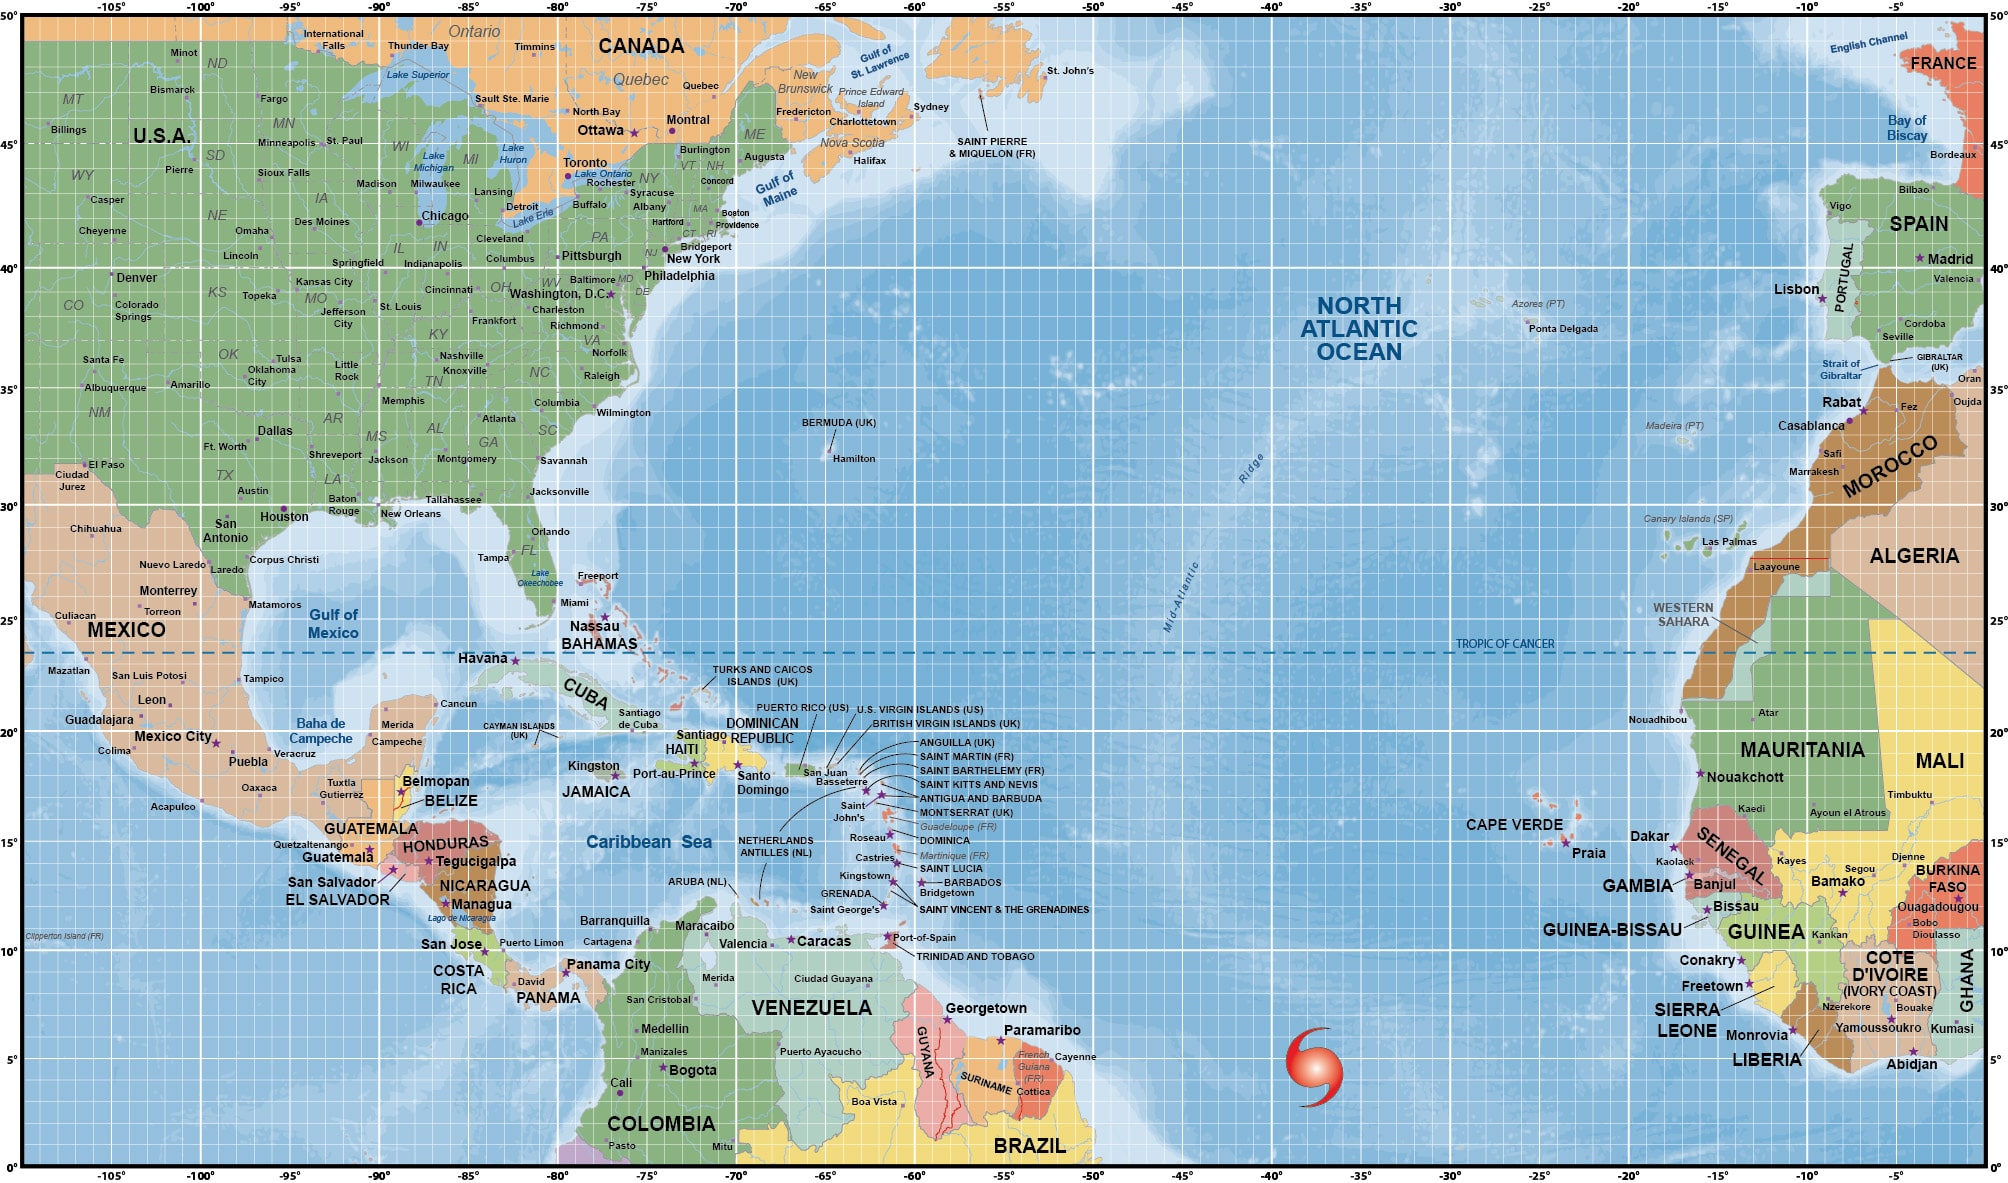 South Atlantic Ocean Hurricanes - ocean wildlife list